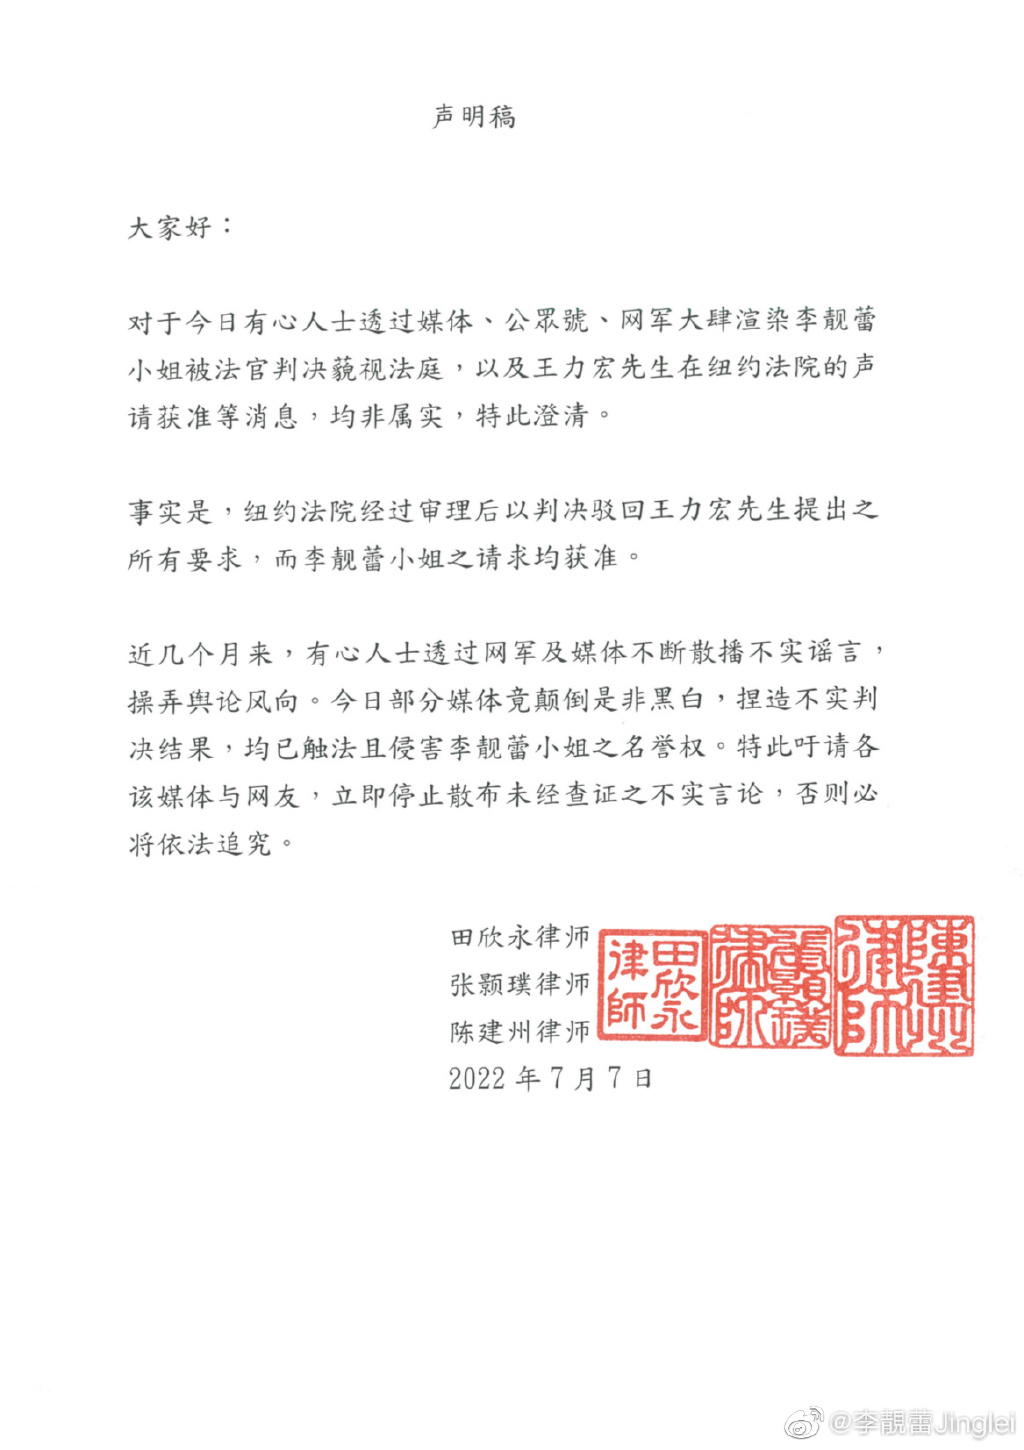 李靓蕾声明回应 网传藐视法庭强制执行判决非属实